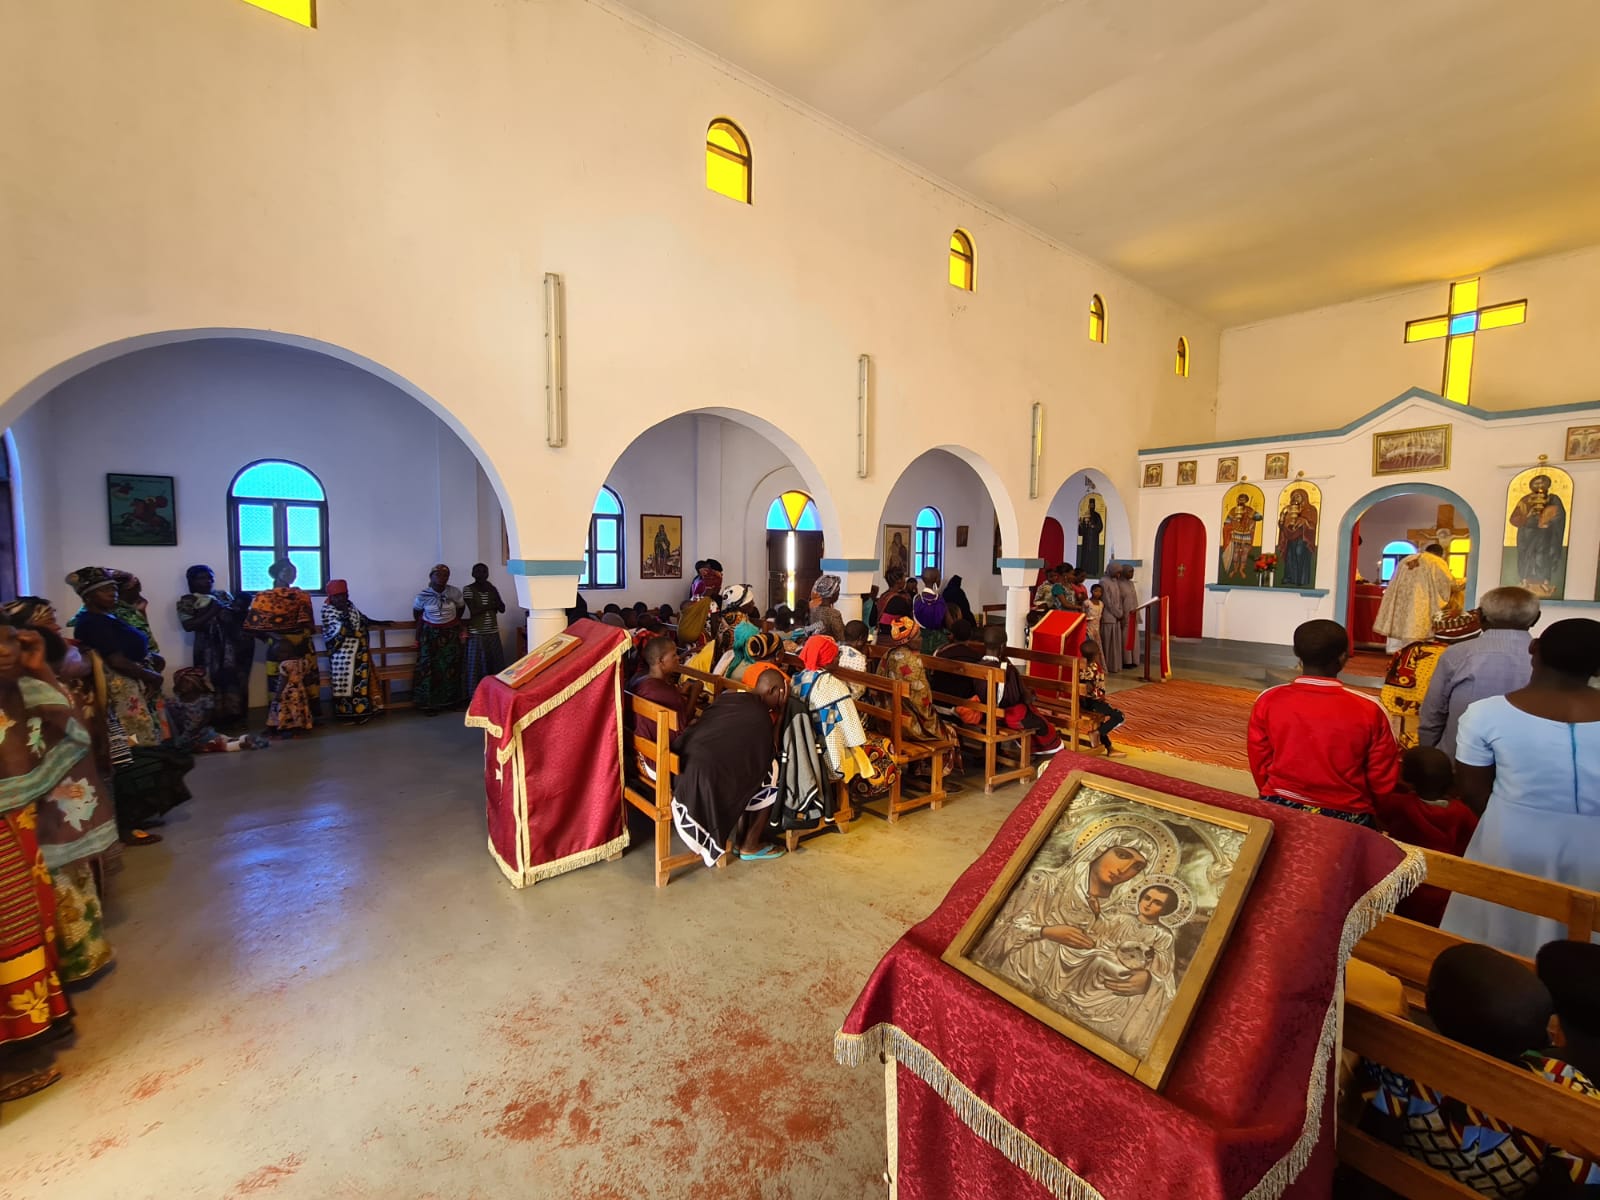 Comunitate și comuniune – bucuria întâlnirii în biserica satului Kidamali